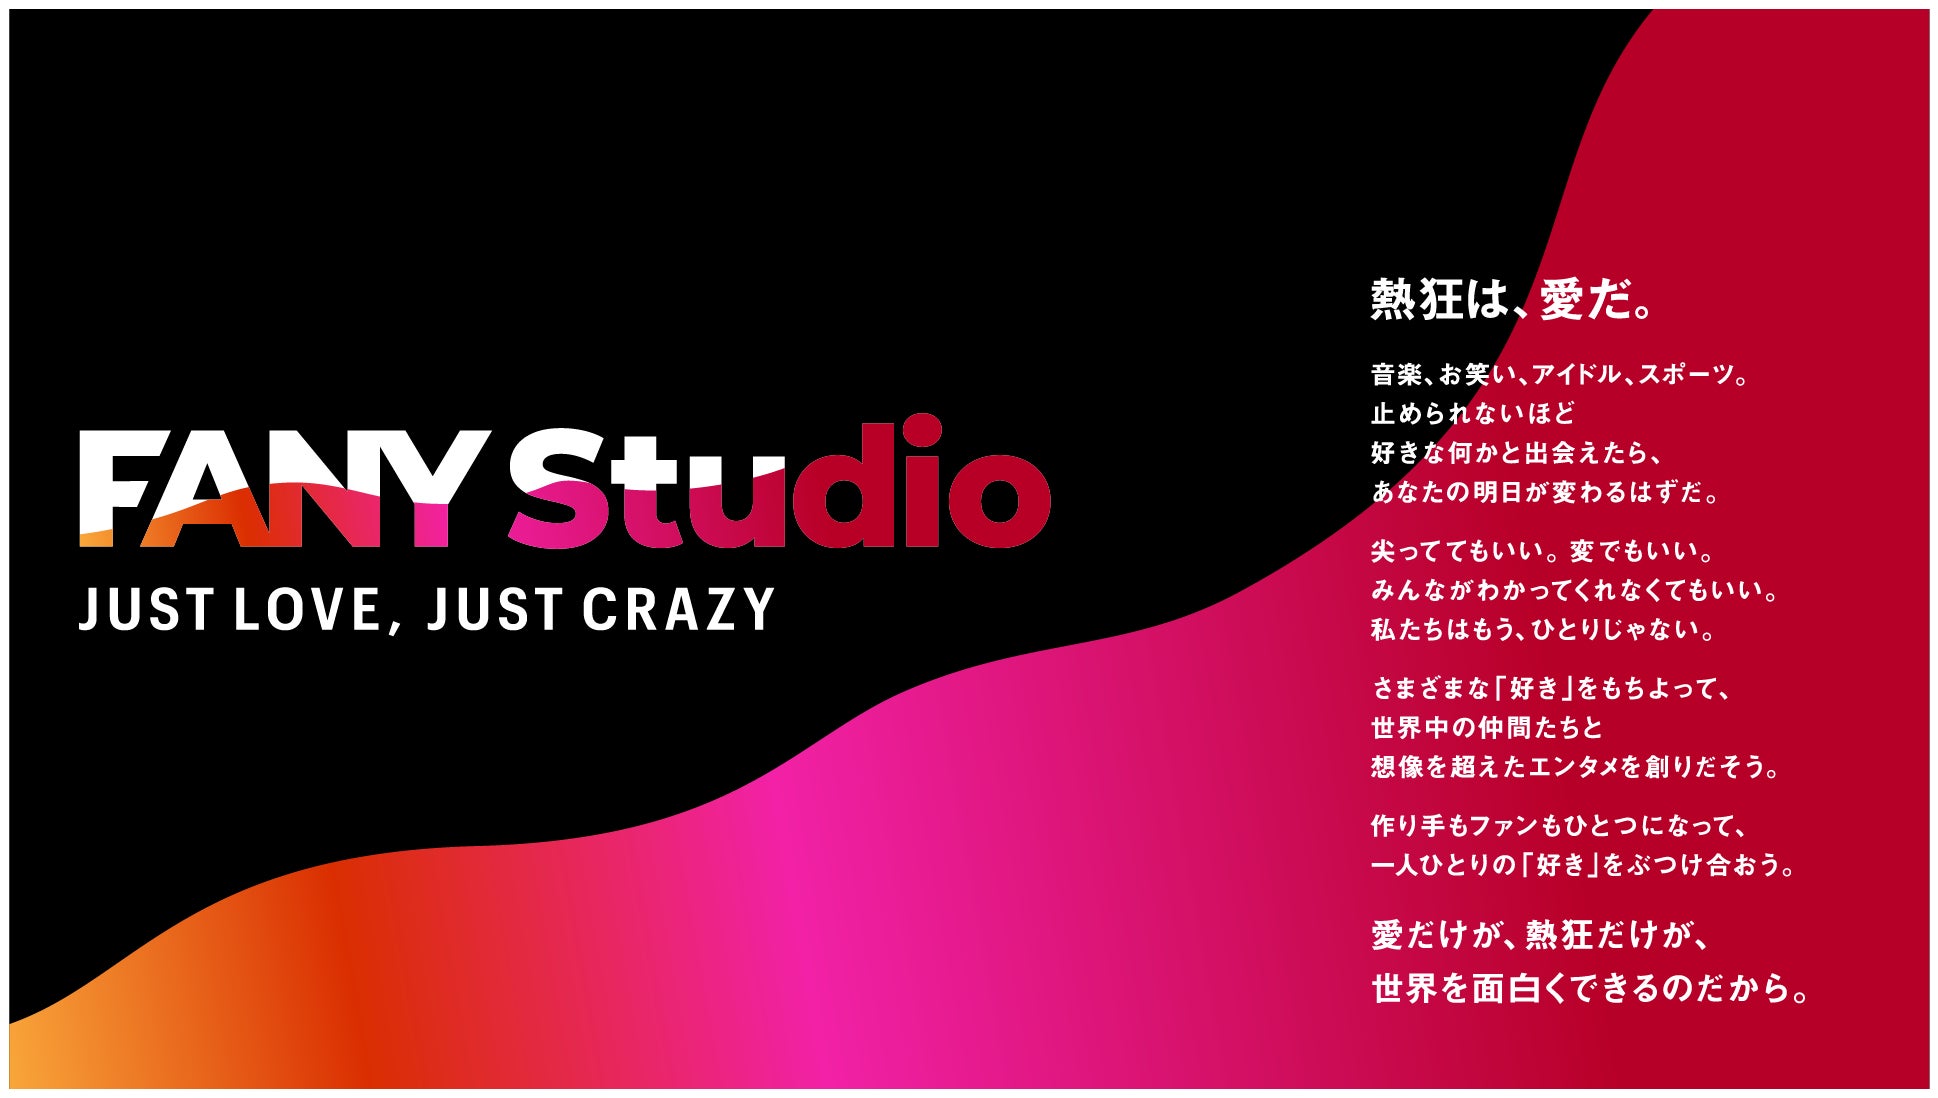 ドコモと吉本興業HDのエンターテインメントビジネス推進に関する業務提携開始および「株式会社NTTドコモ・スタジオ&ライブ」の事業開始についてのサブ画像1